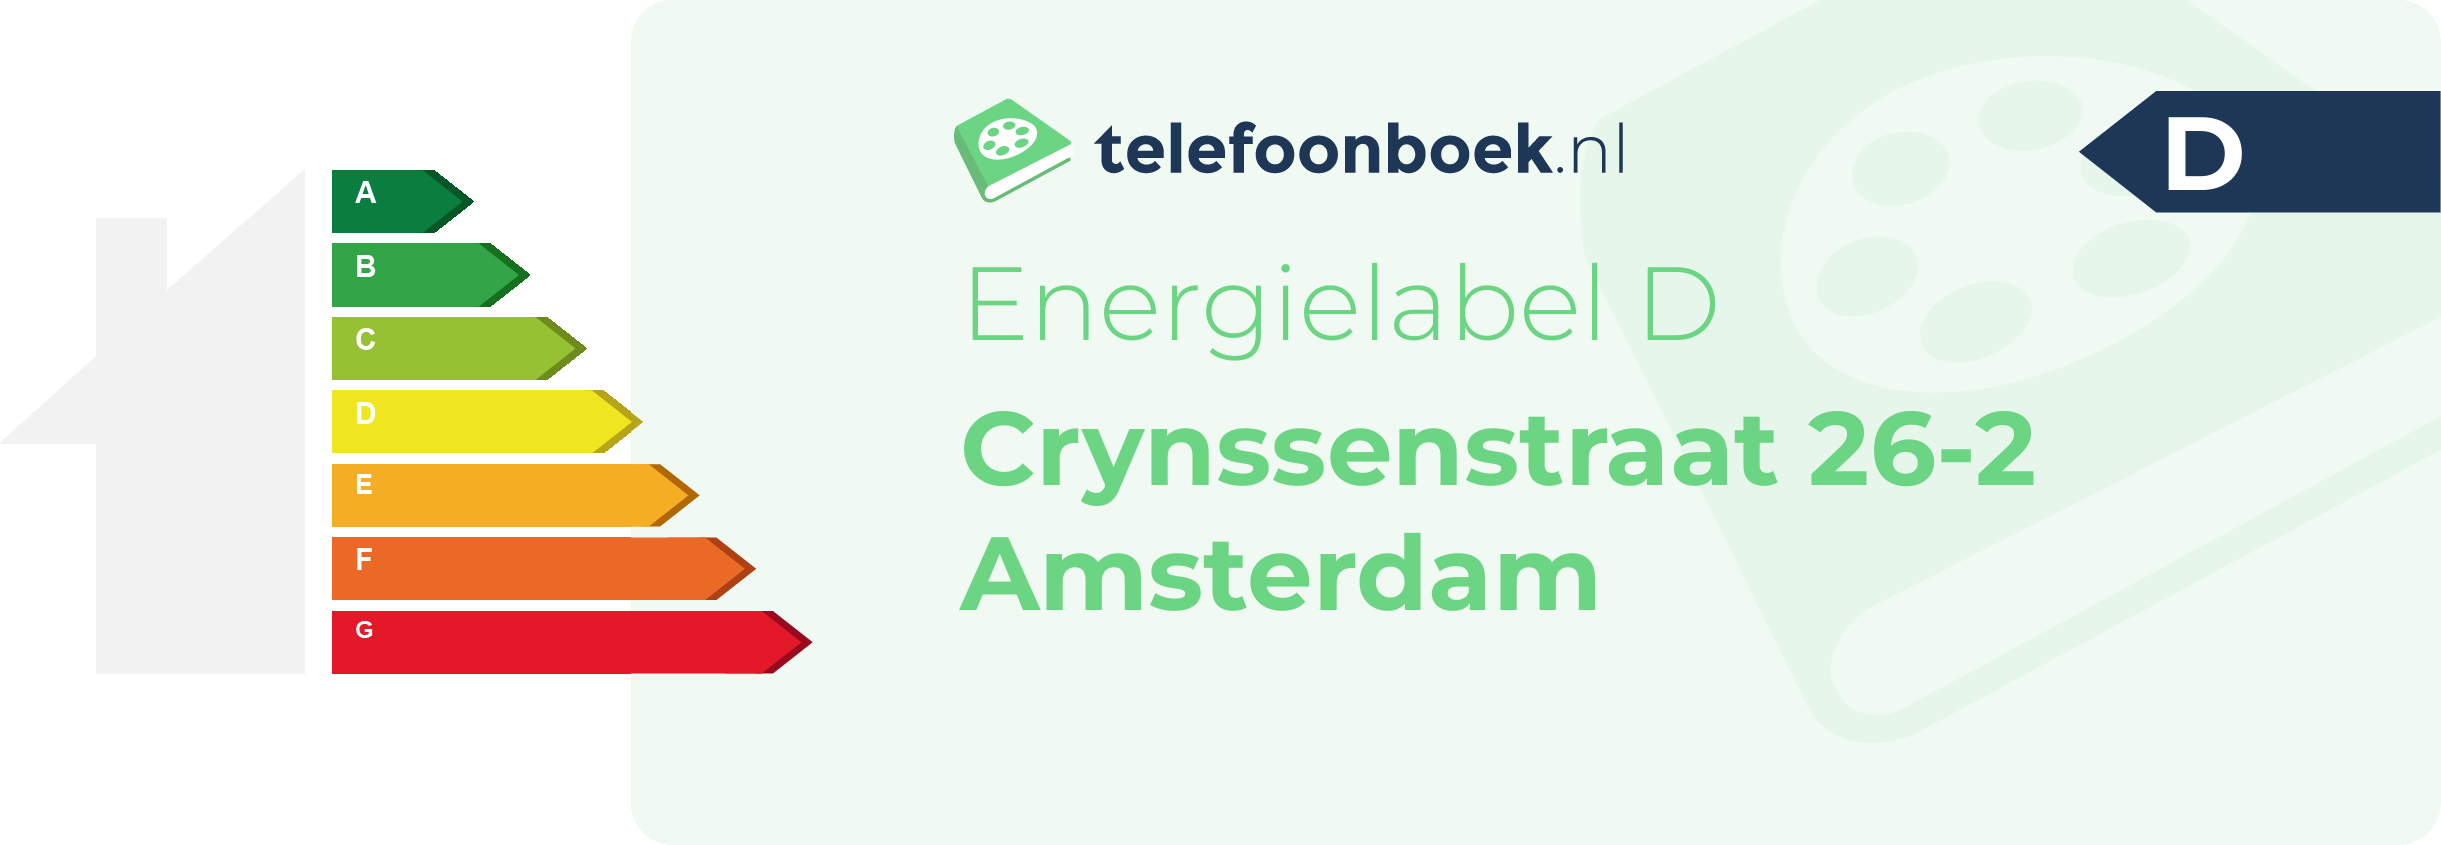 Energielabel Crynssenstraat 26-2 Amsterdam